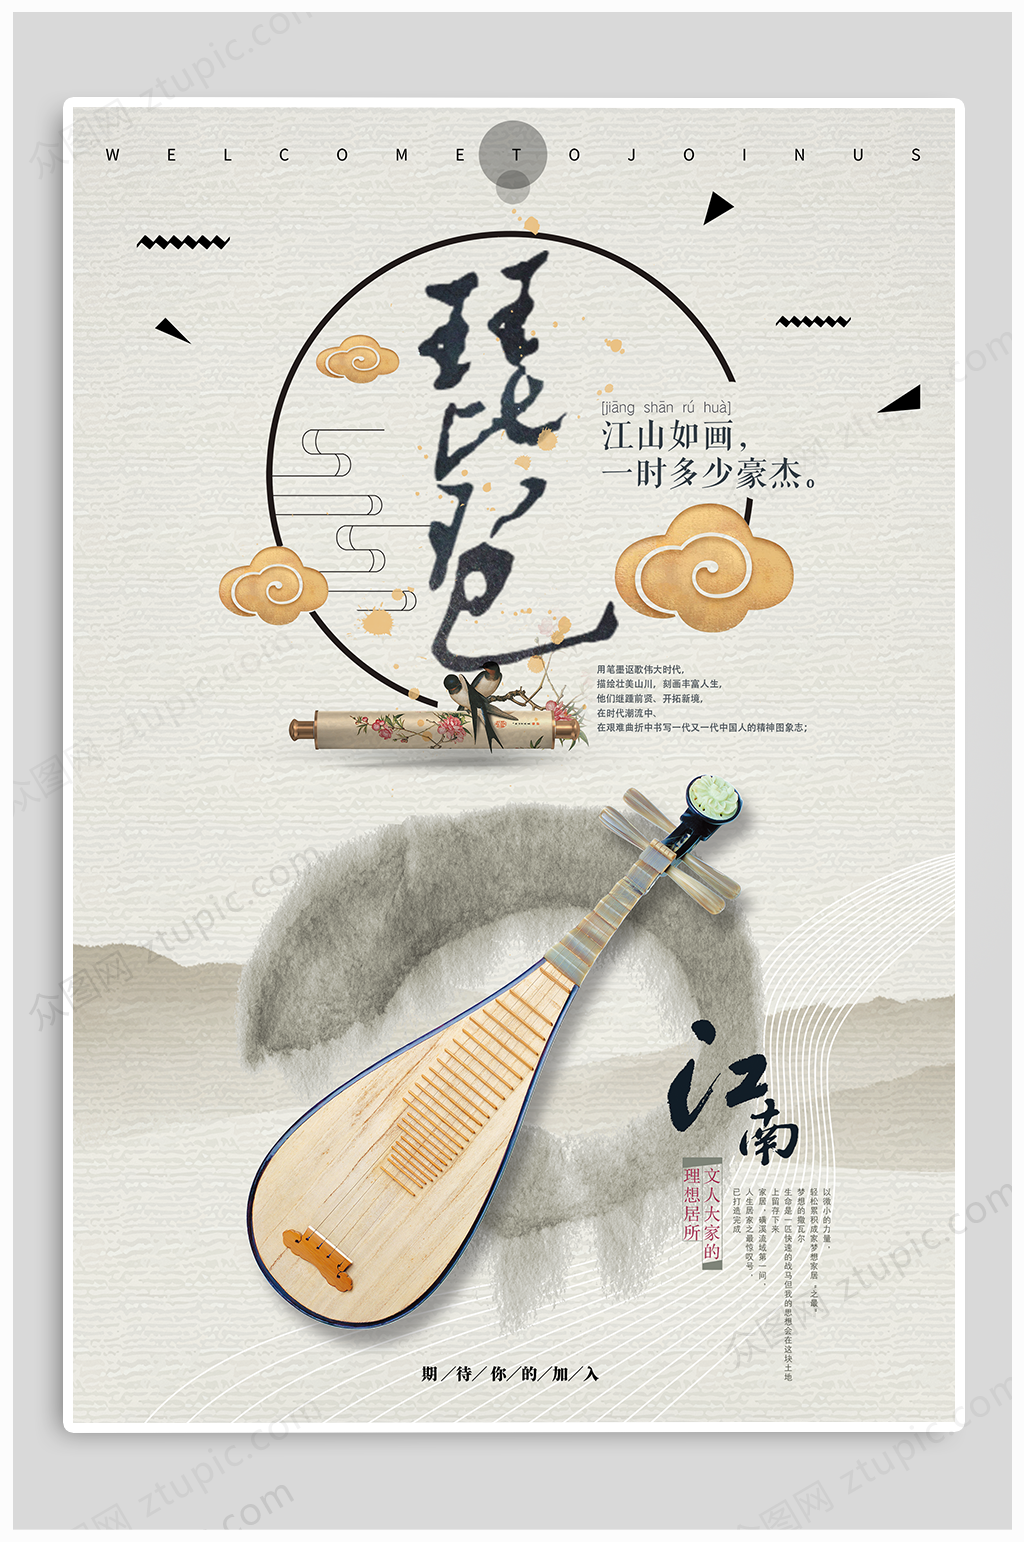 宣传海报琵琶古典乐器民乐招生海报立即下载琵琶古典乐器班培训招生